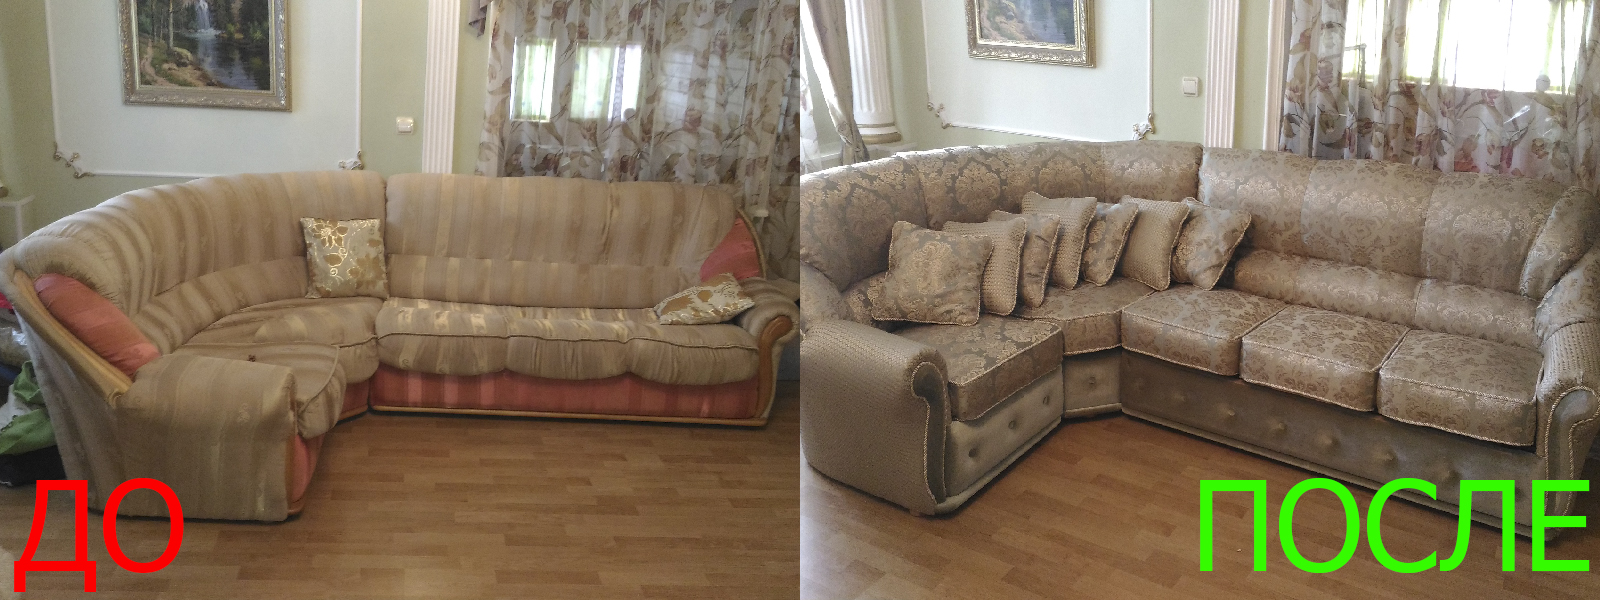 Обтяжка углового дивана в Краснодаре разумные цены на услуги, опытные специалисты